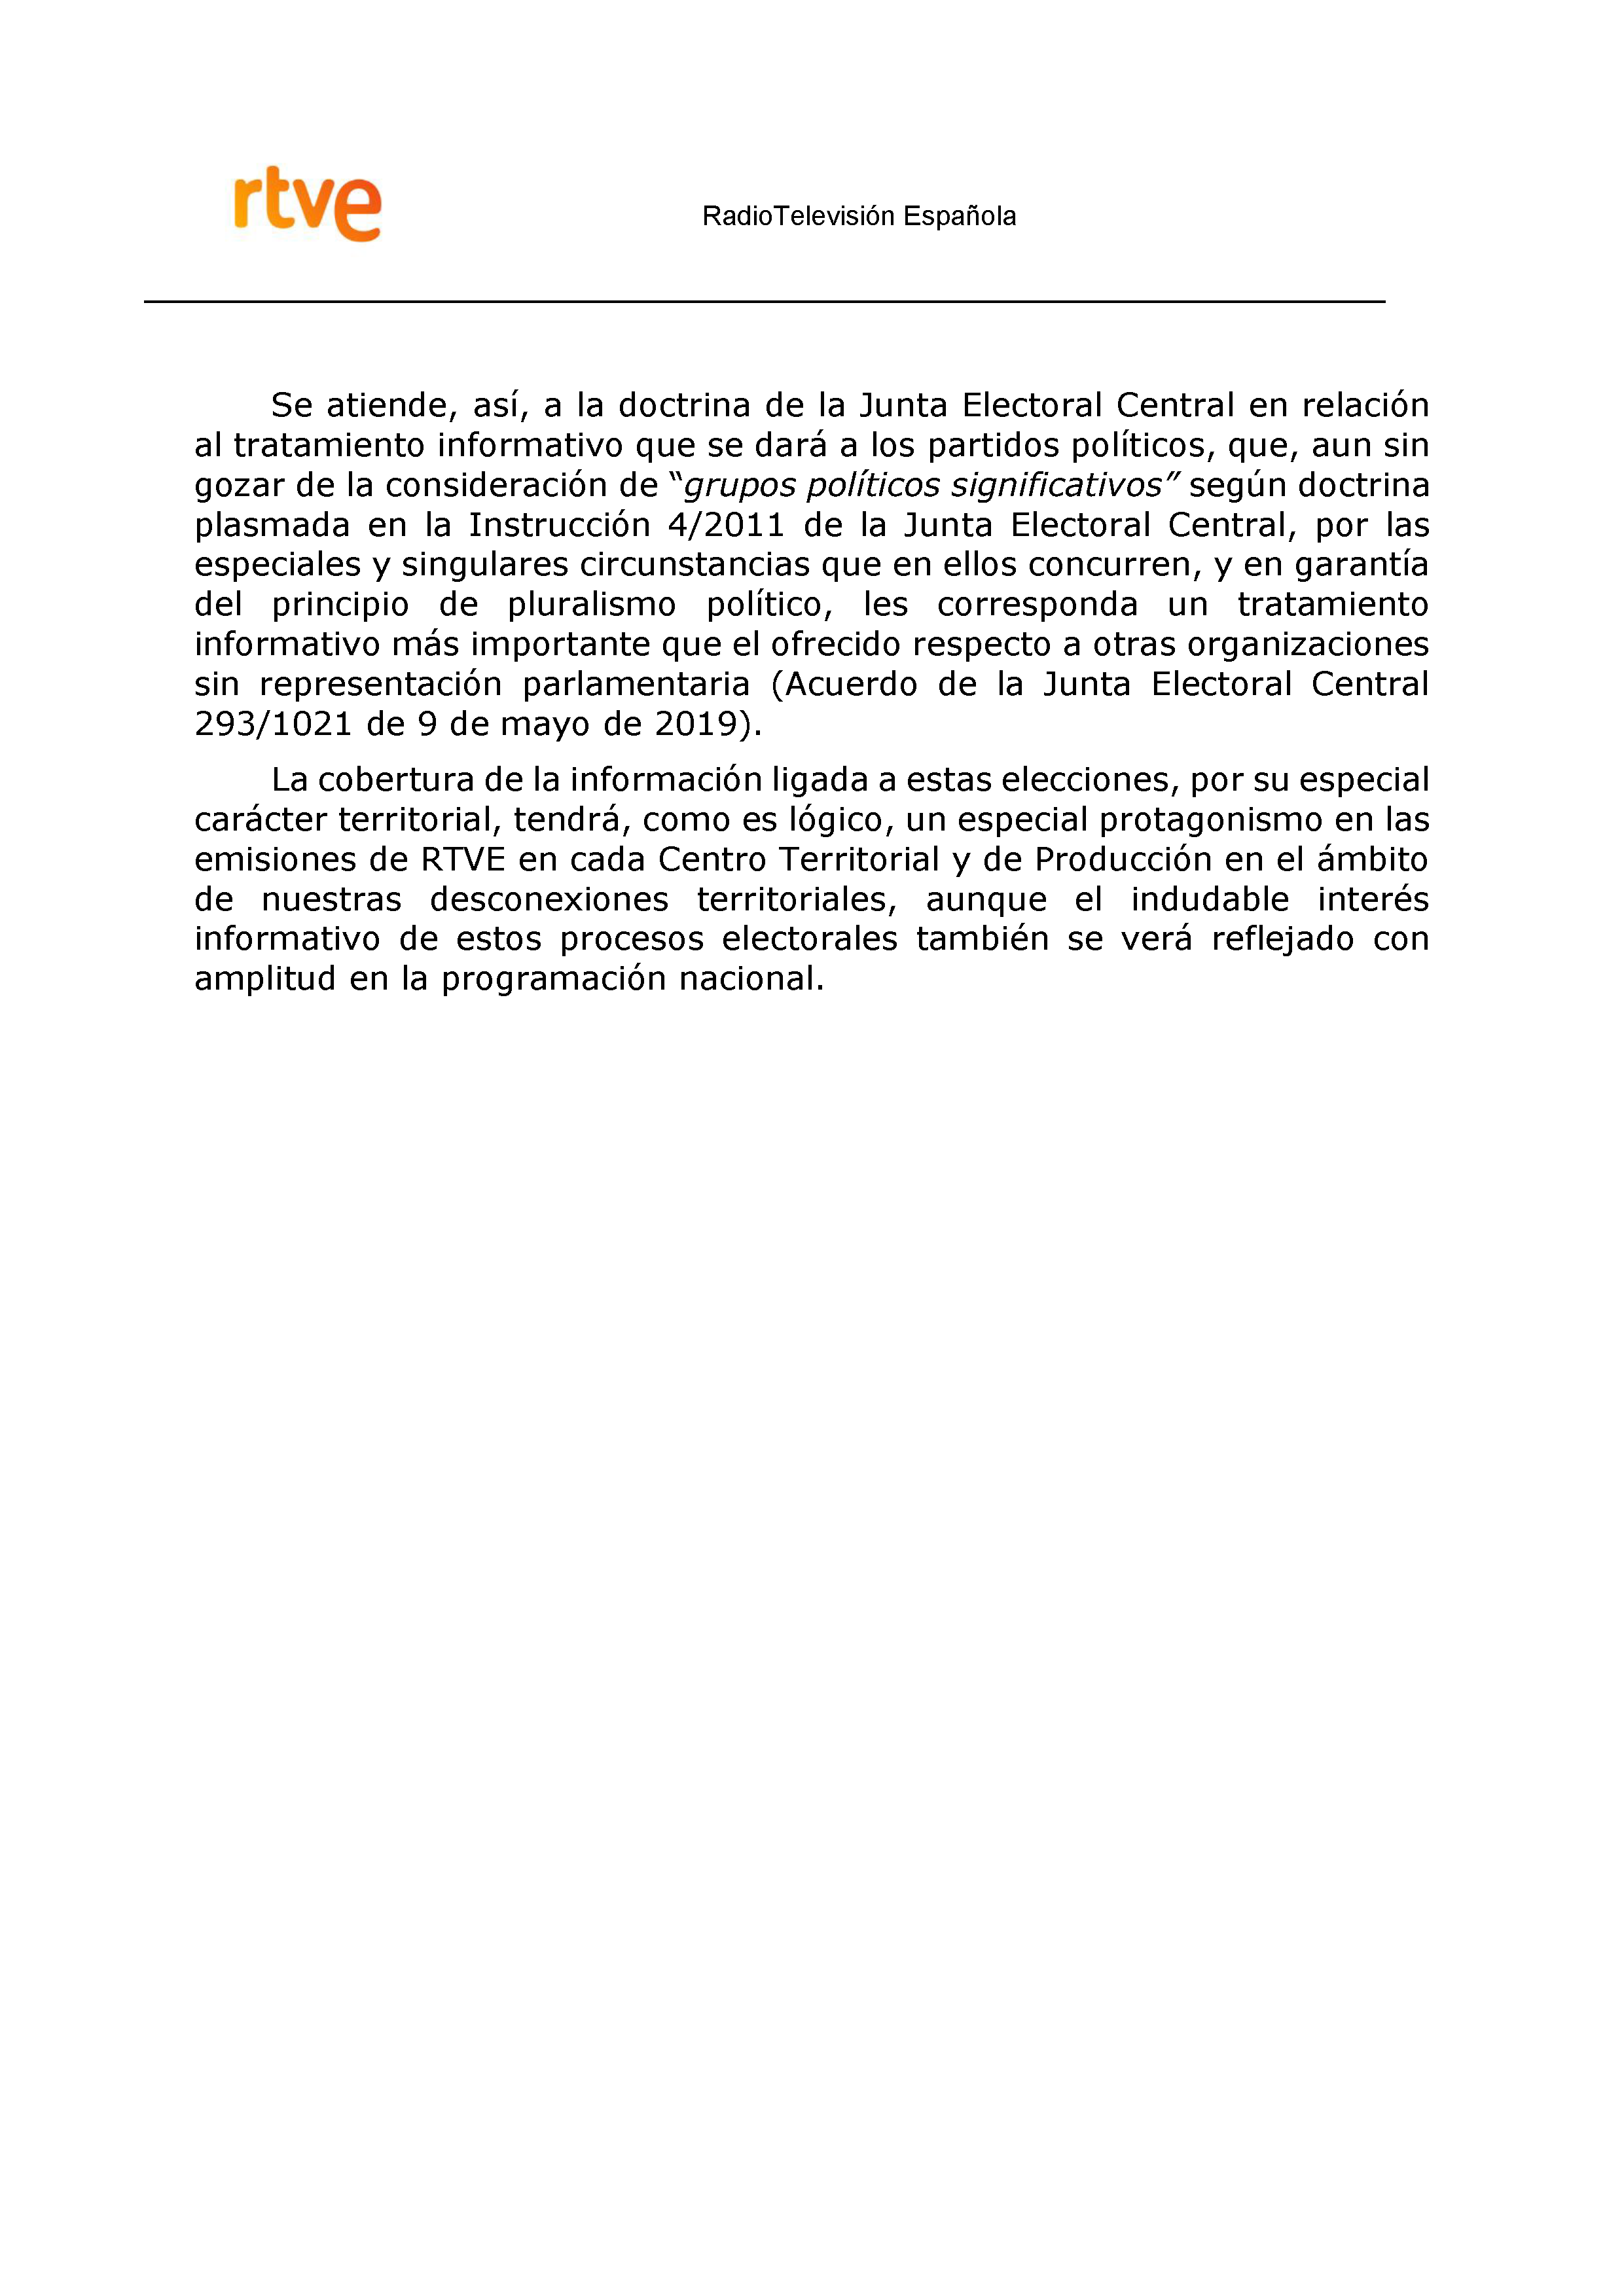 PLAN DE COBERTURA INFORMATIVA RTVE en Extremadura ELECCIONES MUNICIPALES Y AUTONÃ“MICAS Pag 4